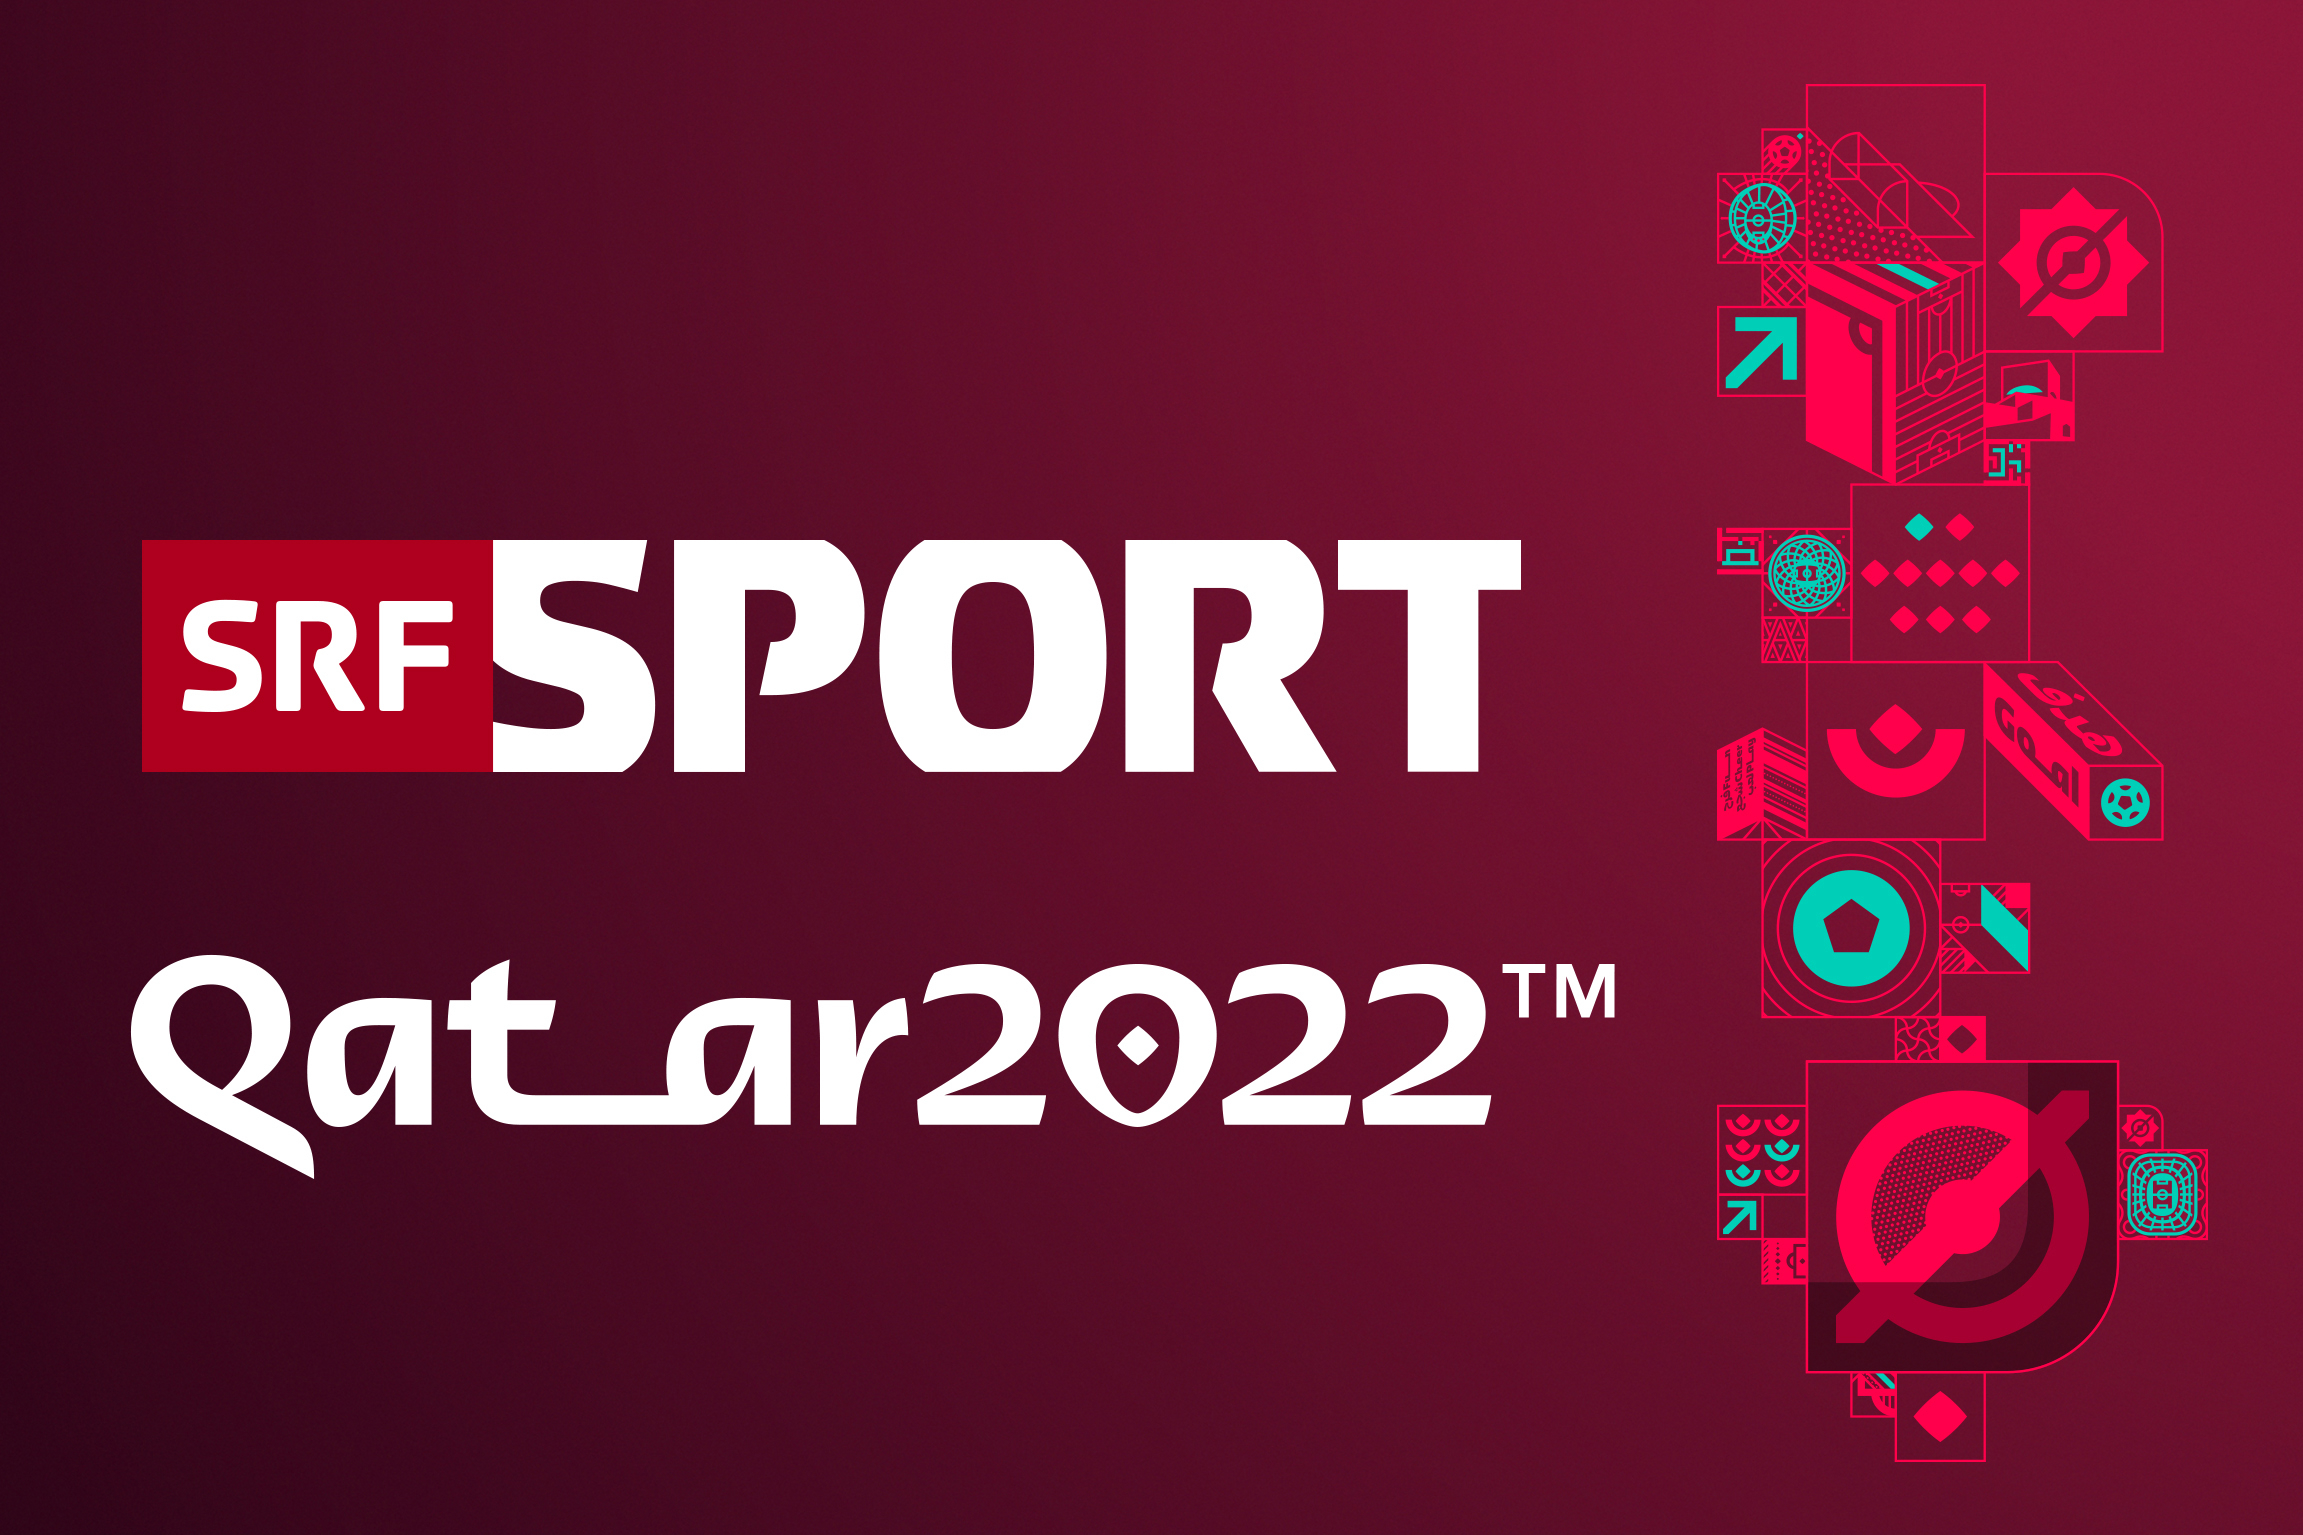 SRF Sport Qatar 2022Keyvisual2022Copyright: SRF